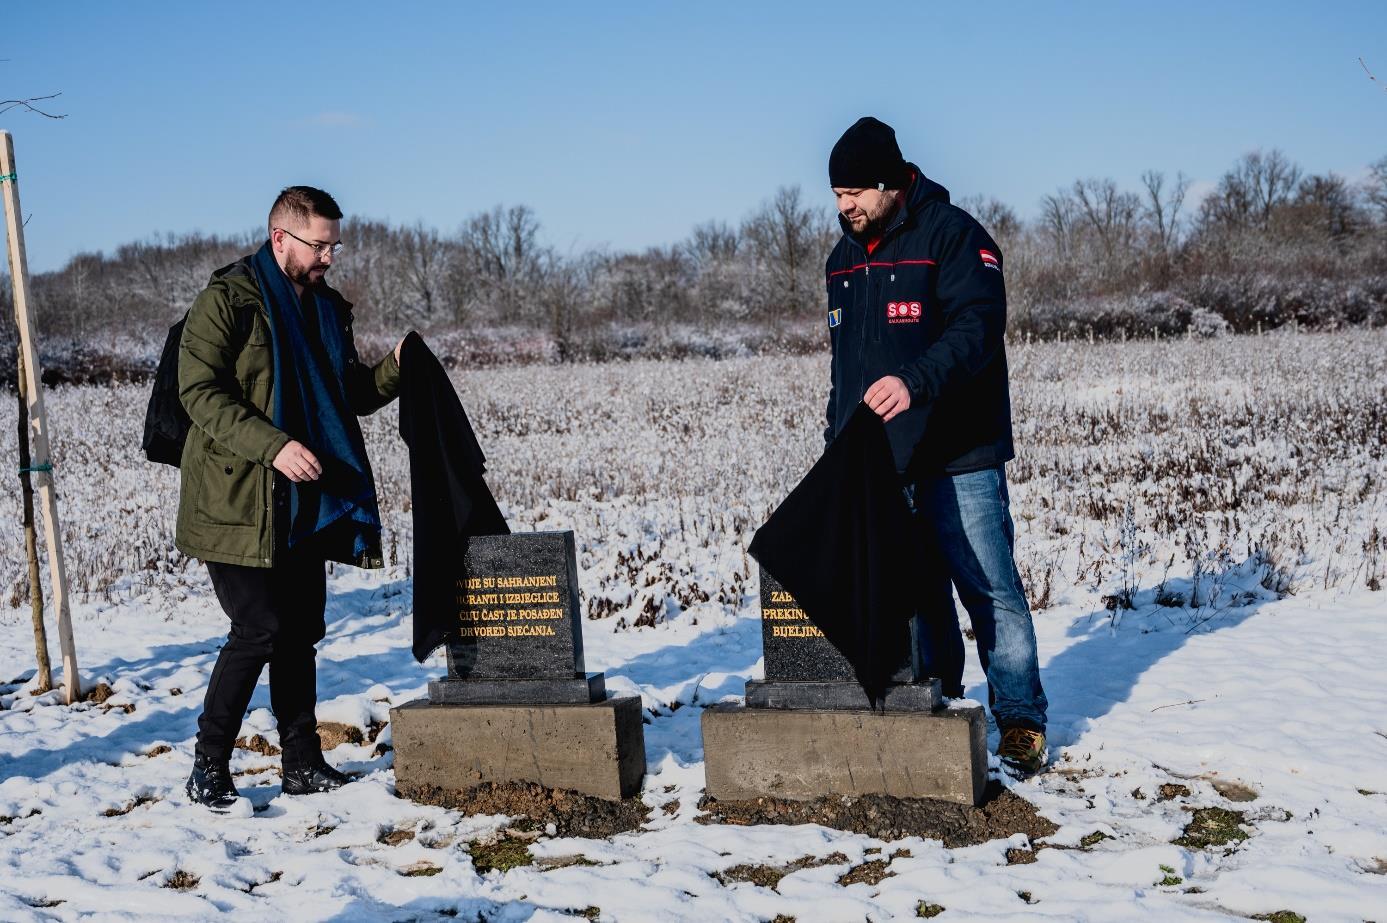 Zwei schwarze Grabsteine werden von zwei Männern enthüllt. Es liegt Schnee.